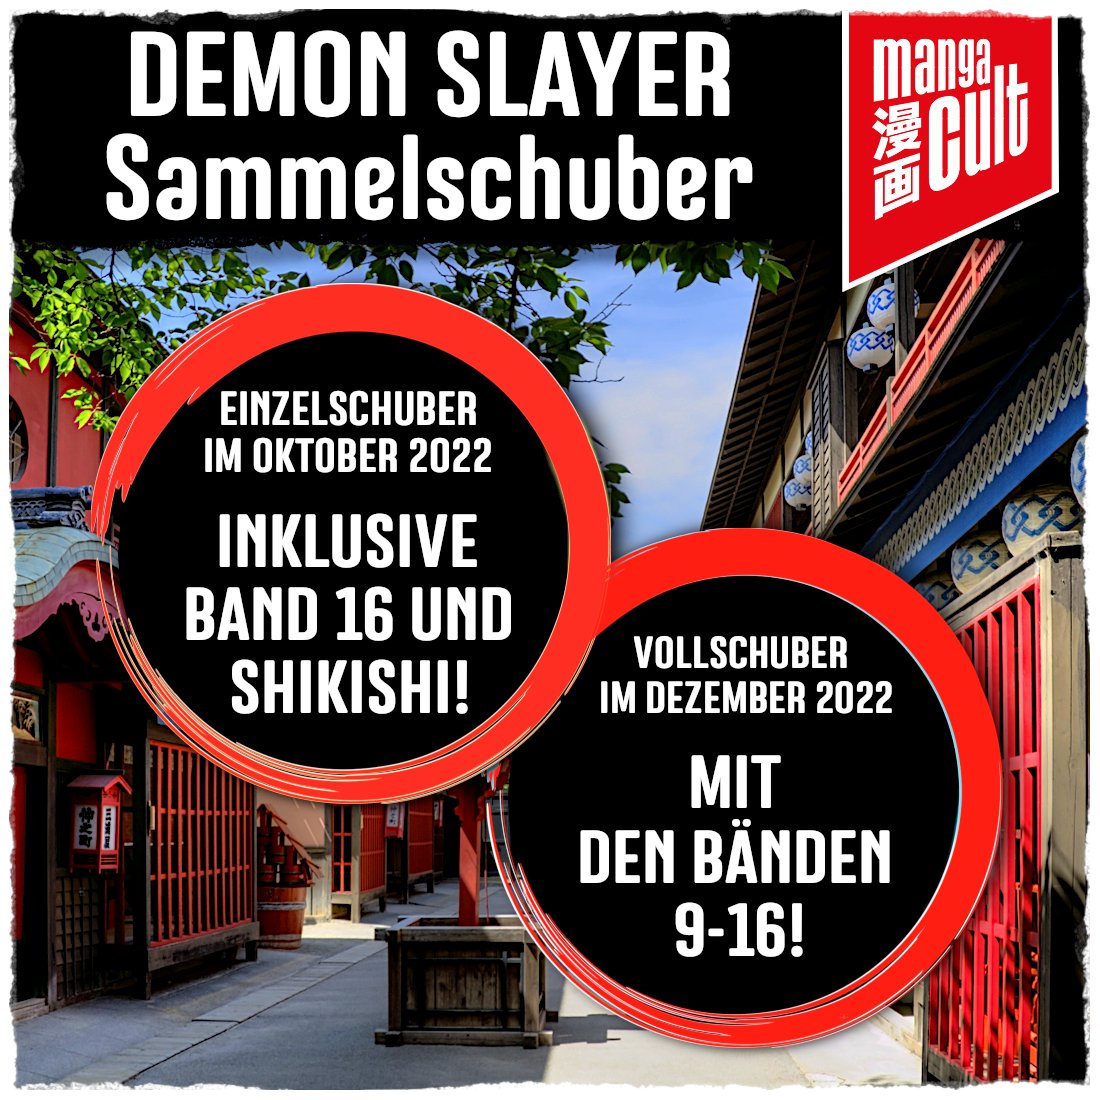 SC Deutsche Ausgabe Demon Slayer 7 MangaCult